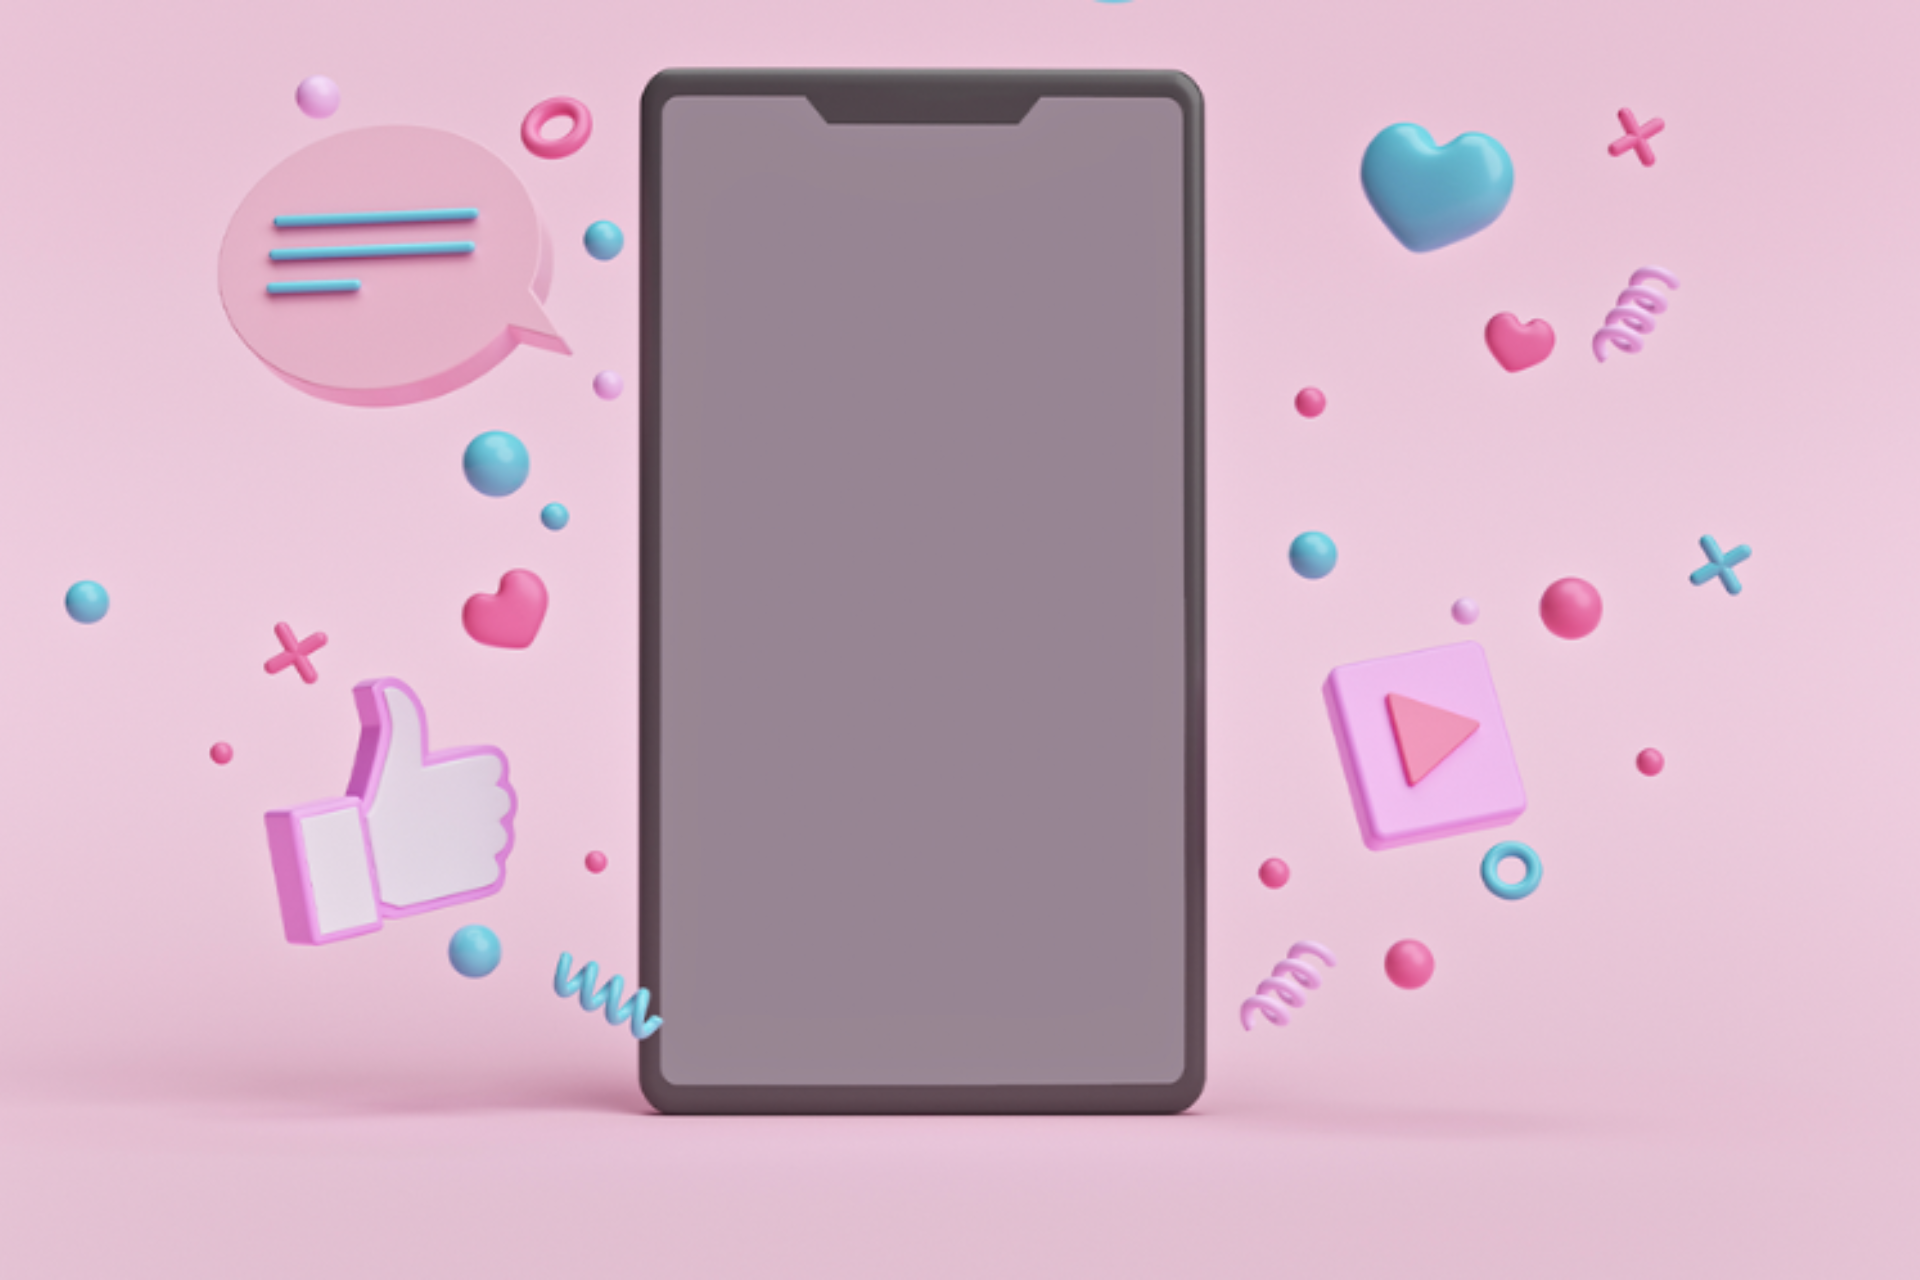 Ein Handybildschirm vor rosa Hintergrund umgeben von kleinen Symbolen wie ein Like Button, ein Plax Button und kleinen rosa Bällen.